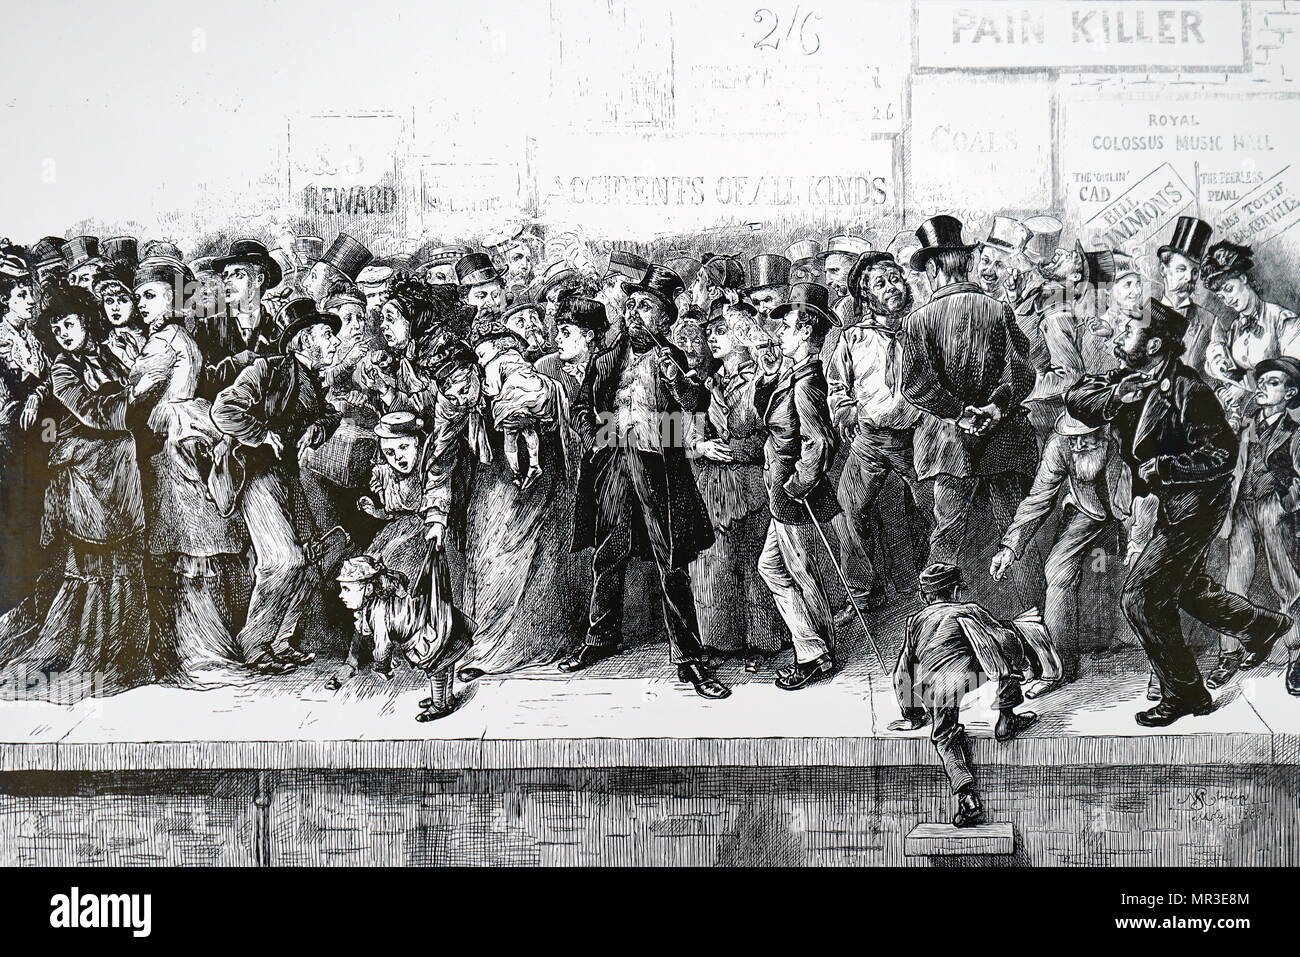 Cartoon mit der Darstellung eines chaotischen Zustand von Charing Cross Station. Illustriert von Harry Furniss (1854-1925) ein Künstler und Illustrator. Vom 19. Jahrhundert Stockfoto